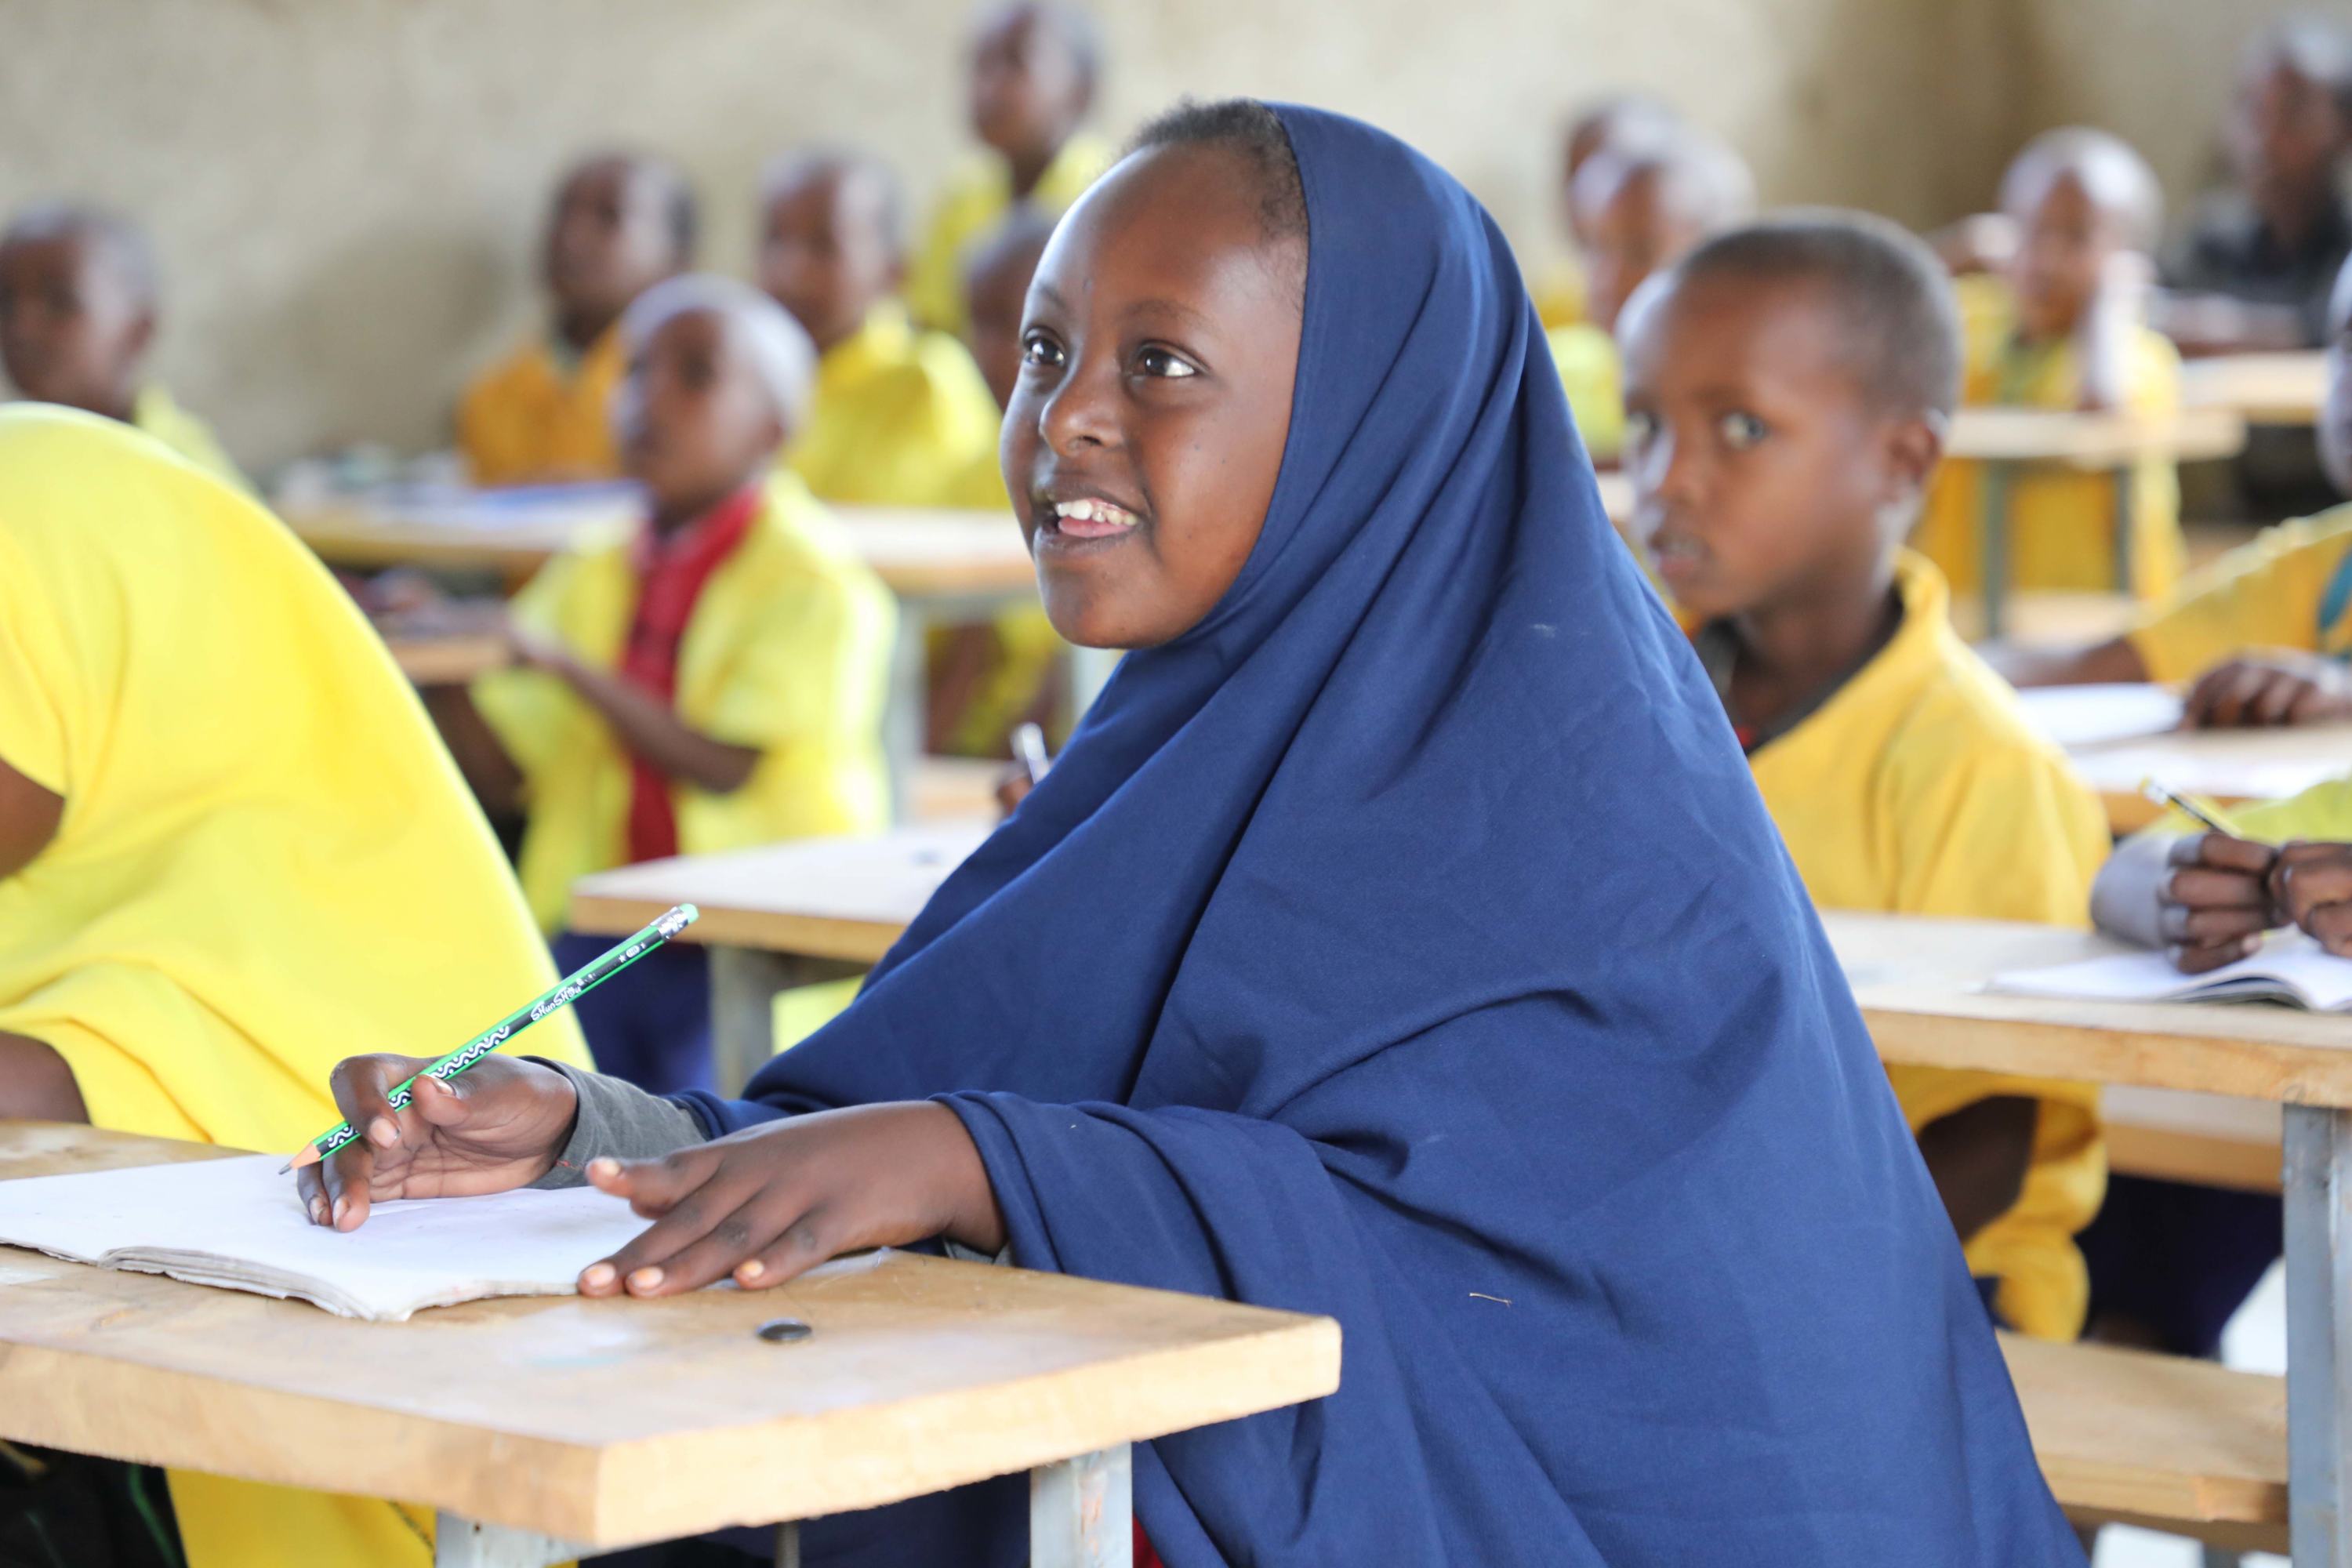 ليدن، طالبة من ذوي الاحتياجات الخاصة في إثيوبيا ، تتلقى دعما تعليميا موجها، بفضل برنامج ممول من صندوق "التعليم لا ينتظر".